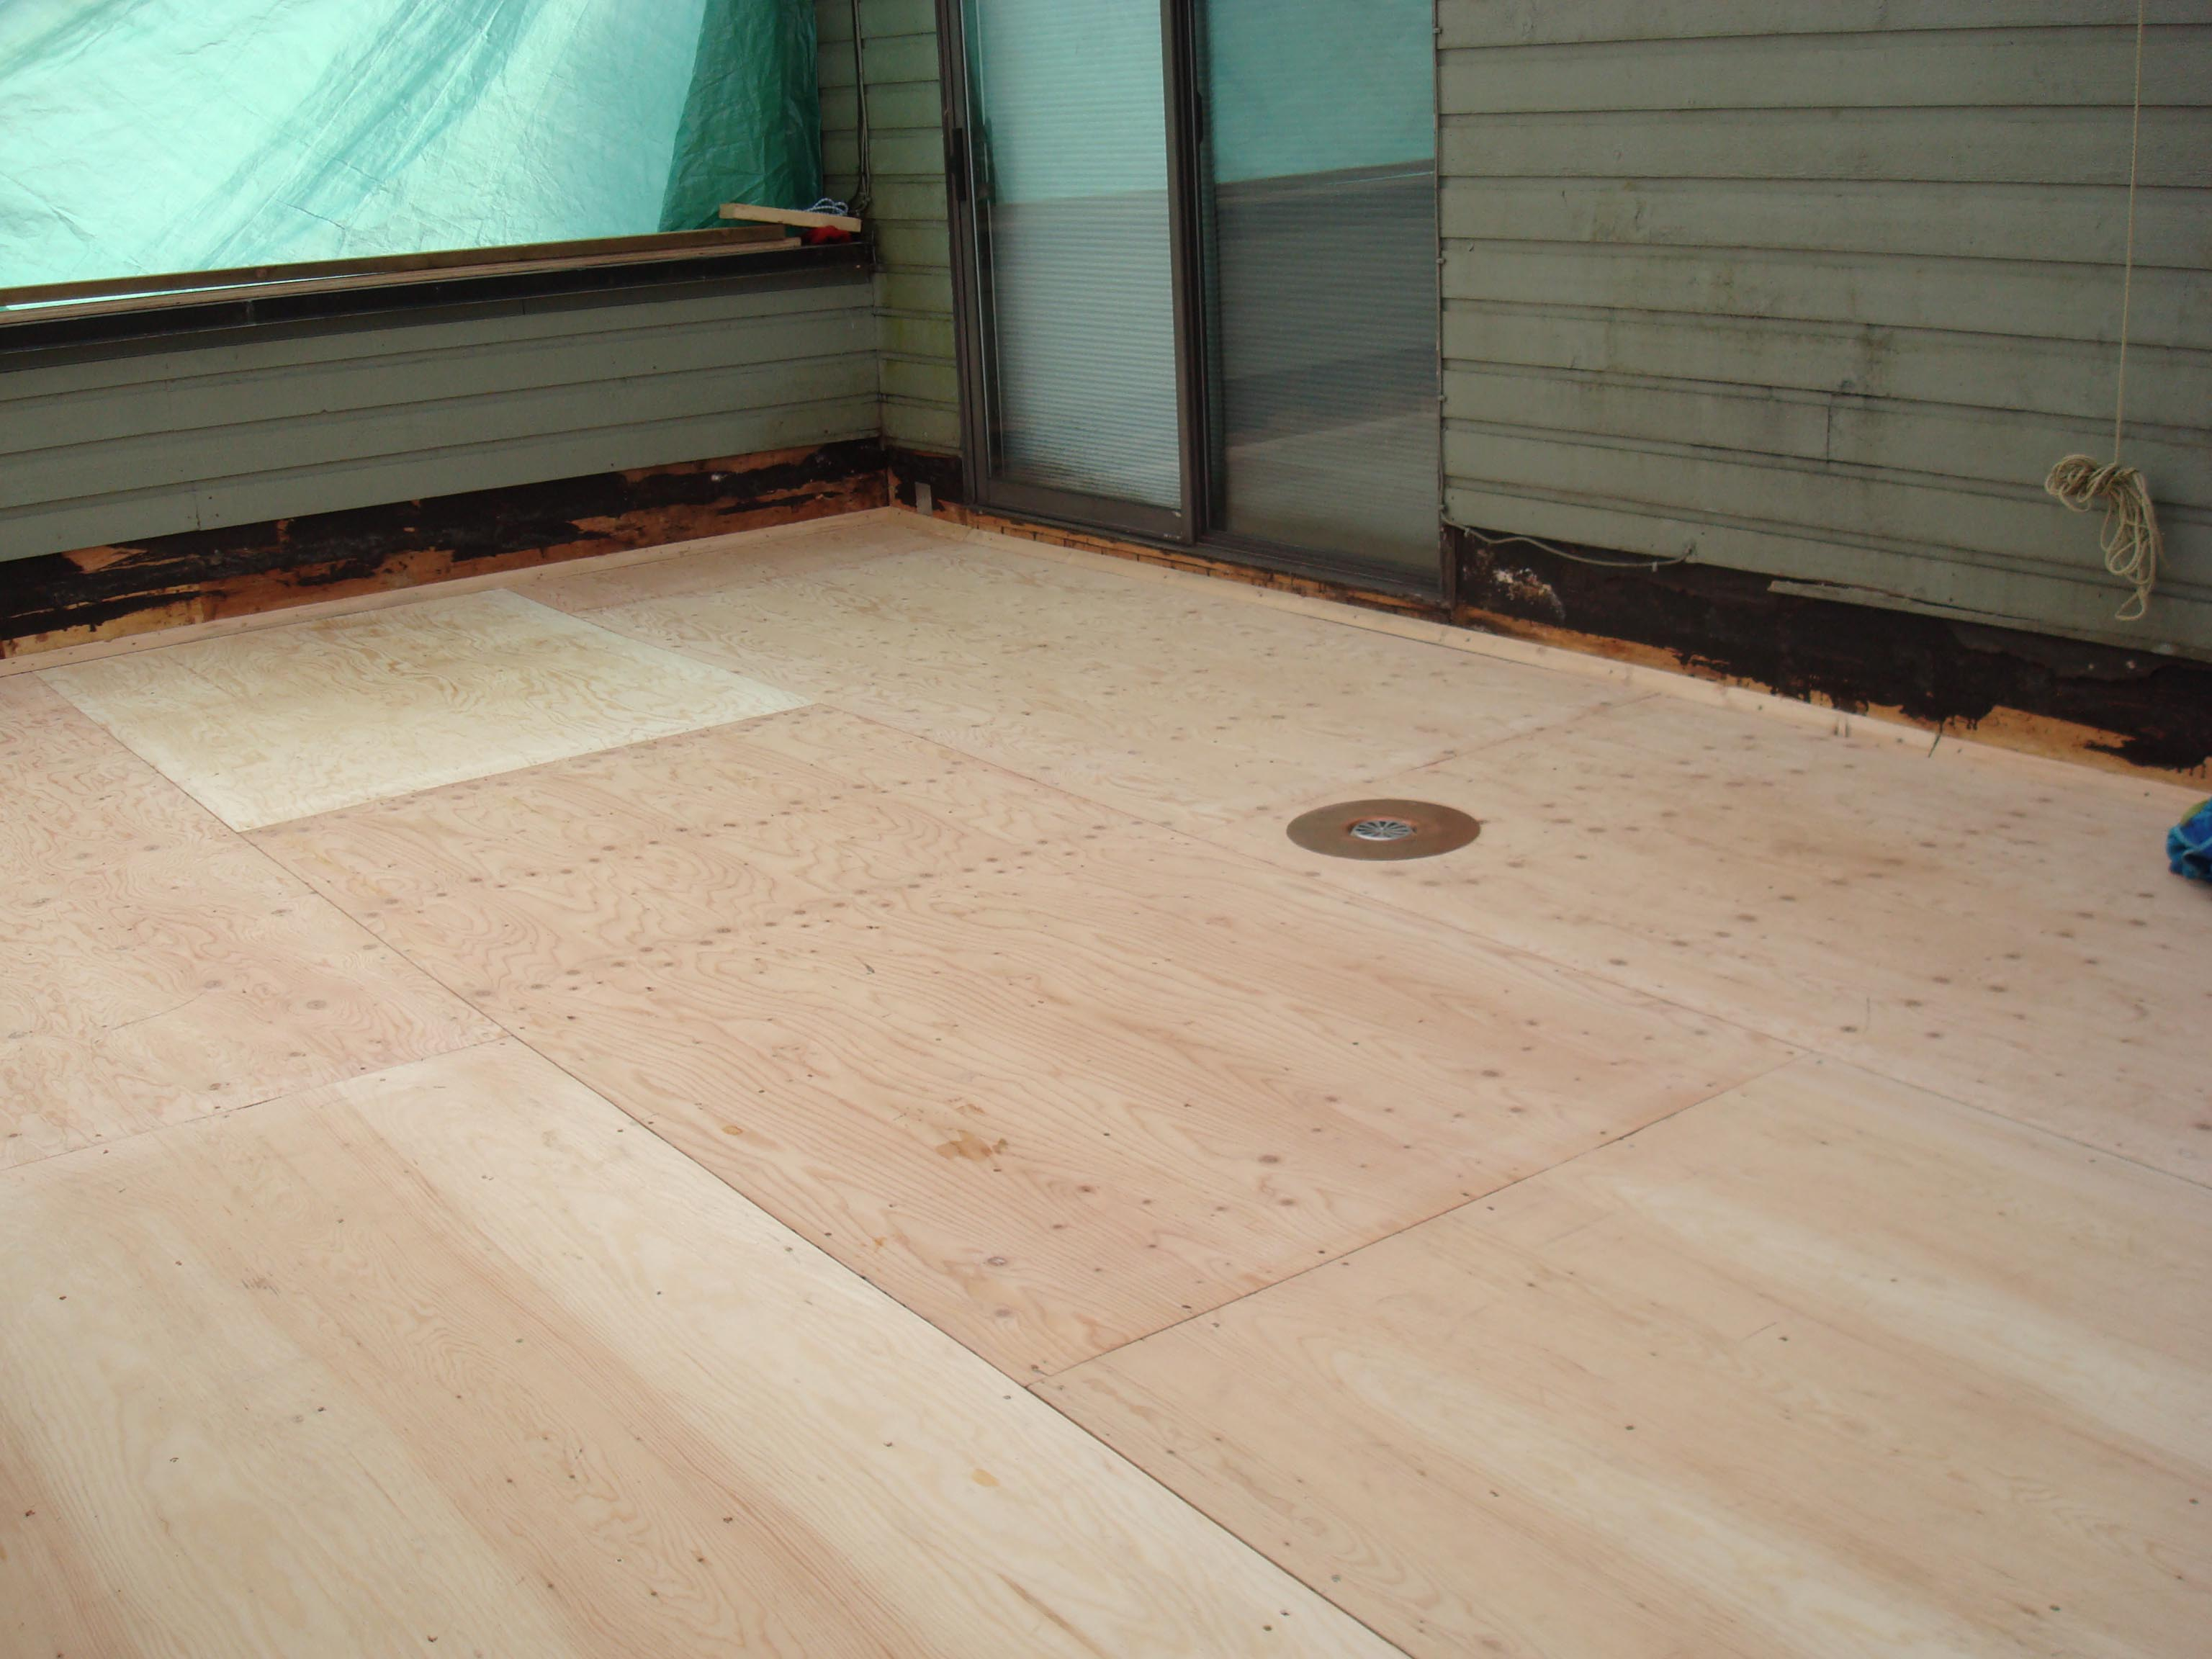 Waterproofing Plywood Decks Deck Coating Deck Repair in measurements 3072 X 2304